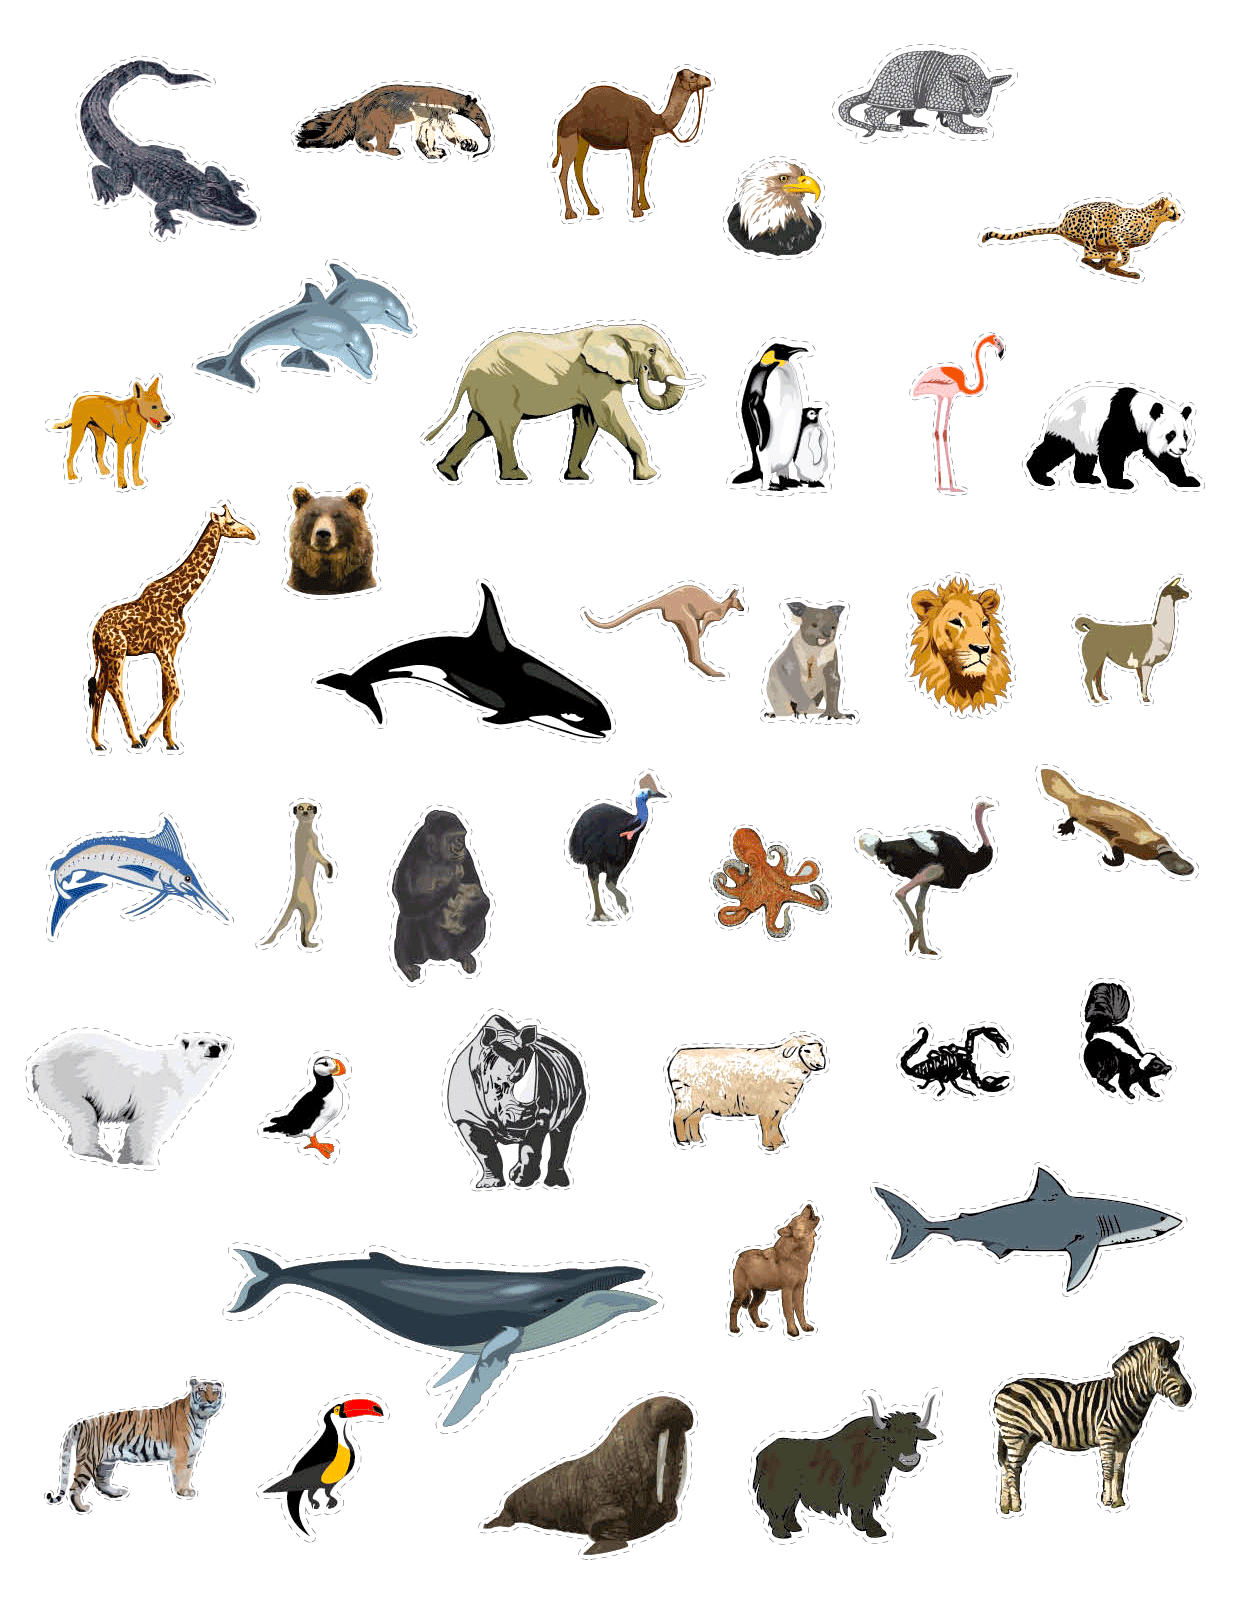 ¿Puedes nombrar estos 40 animales en cinco minutos? 🐅 🐫 🐑 🐢 🐋 Prueba